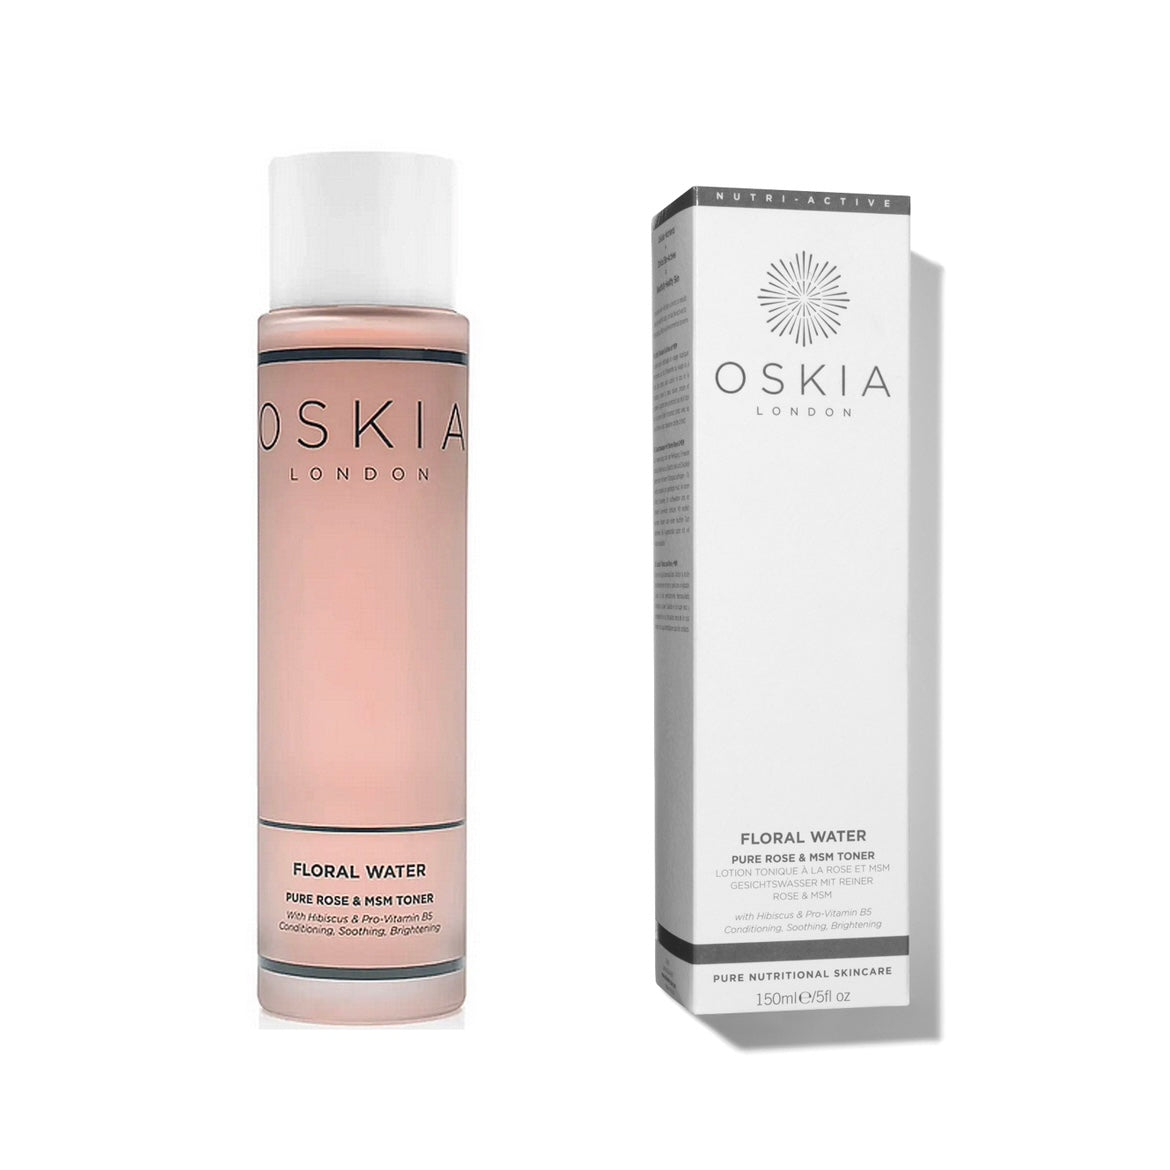 (正版現貨) OSKIA London Floral Water pure rose & MSM toner 150ml